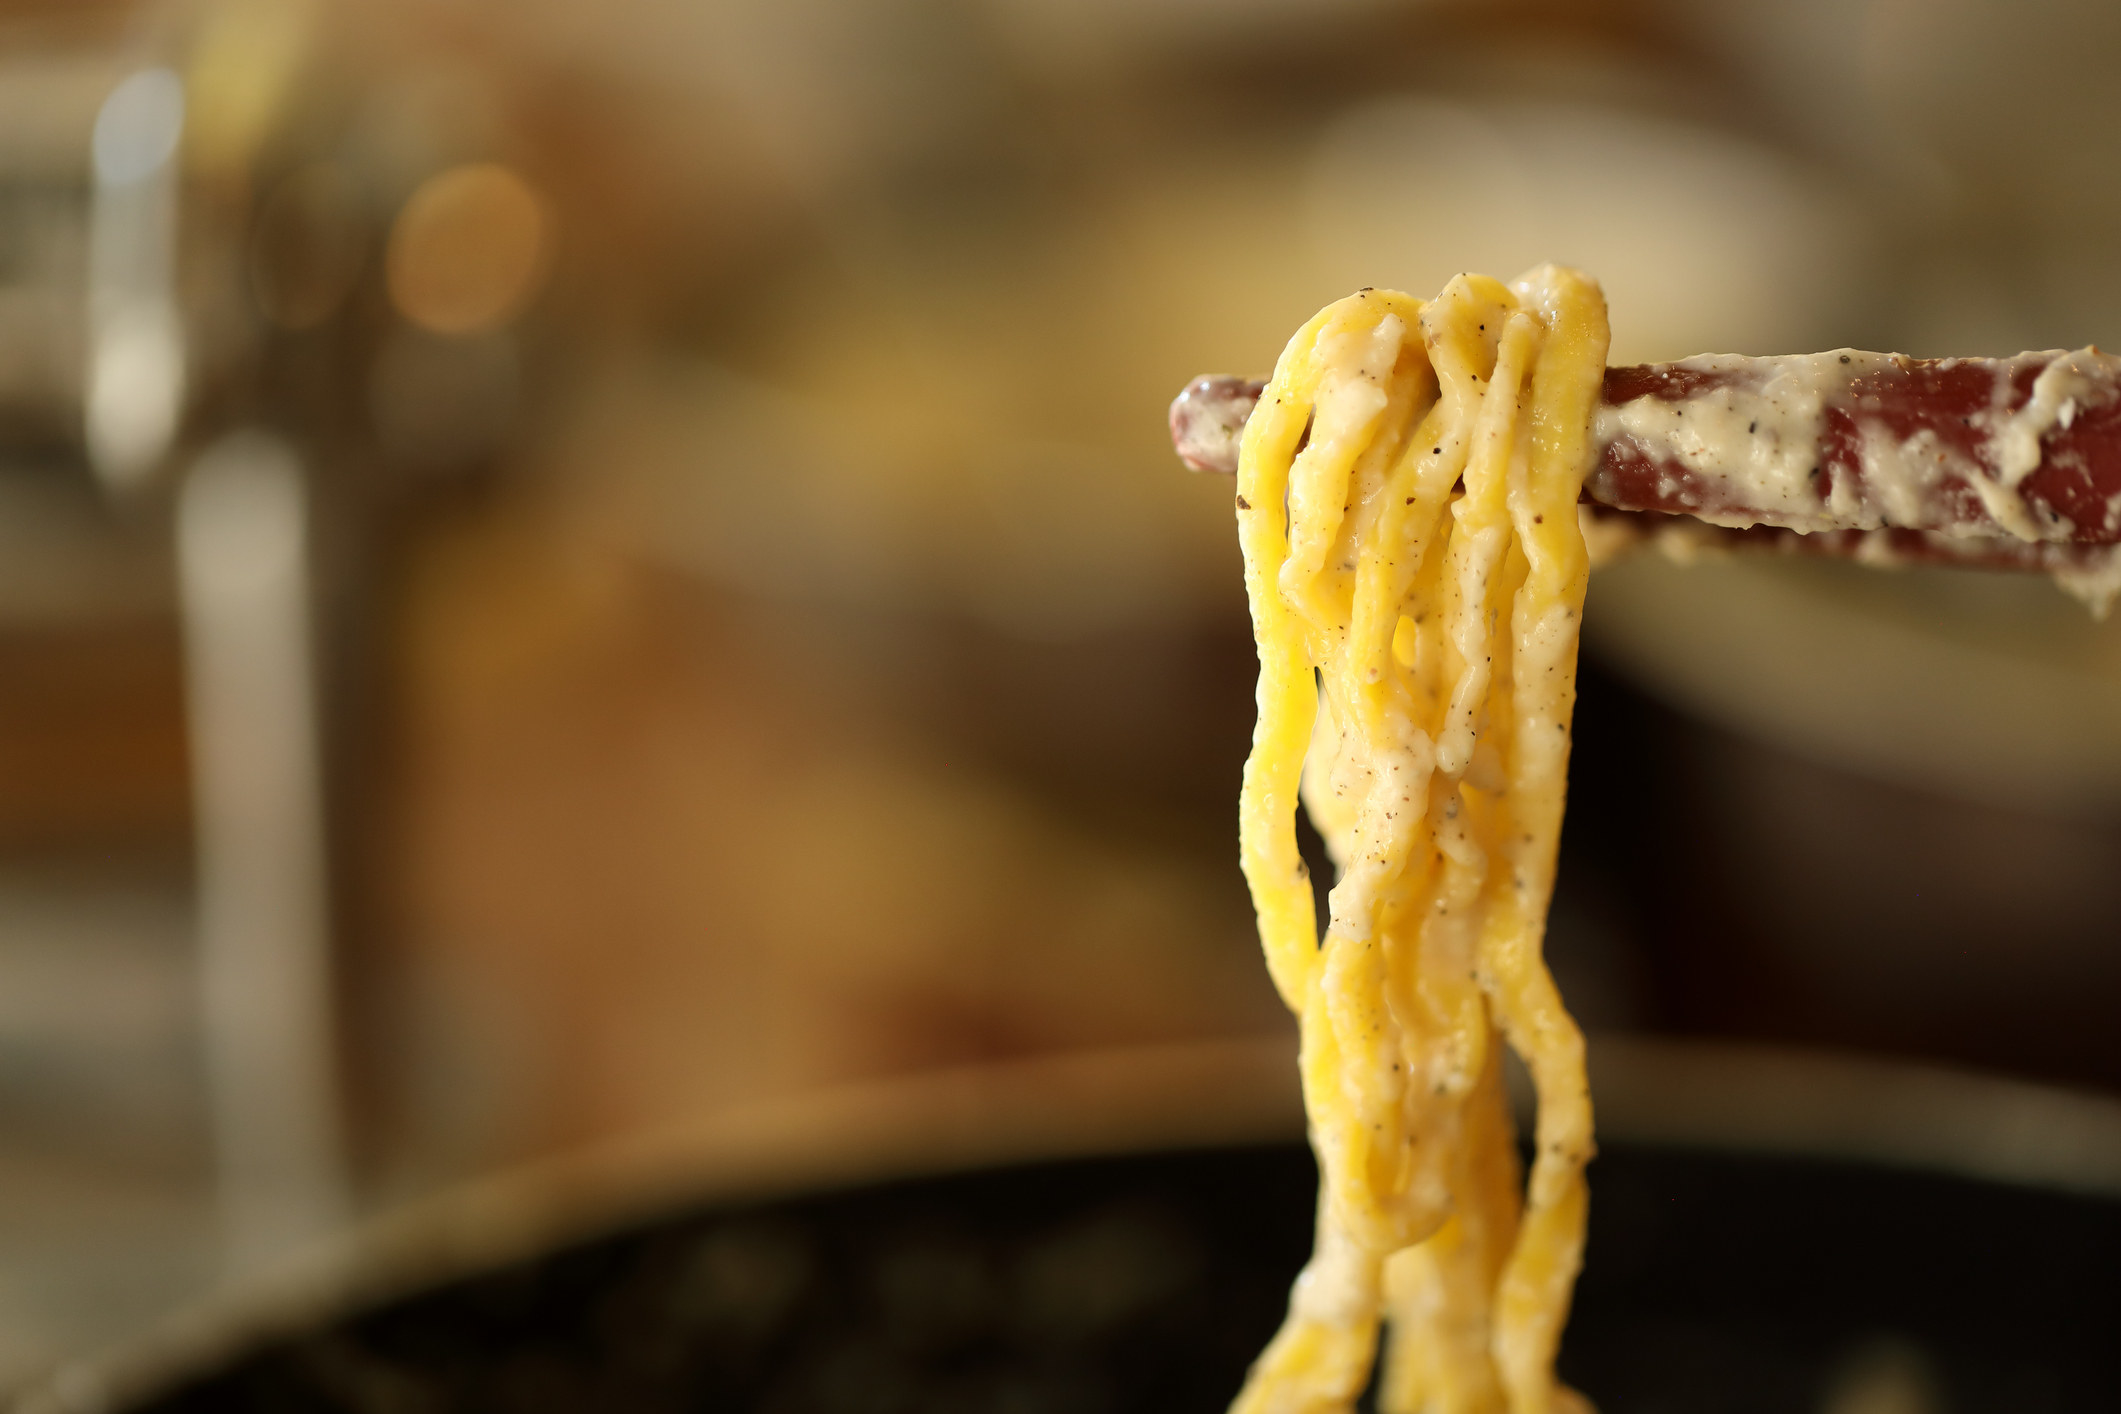 A few strands of cacio e pepe pasta.